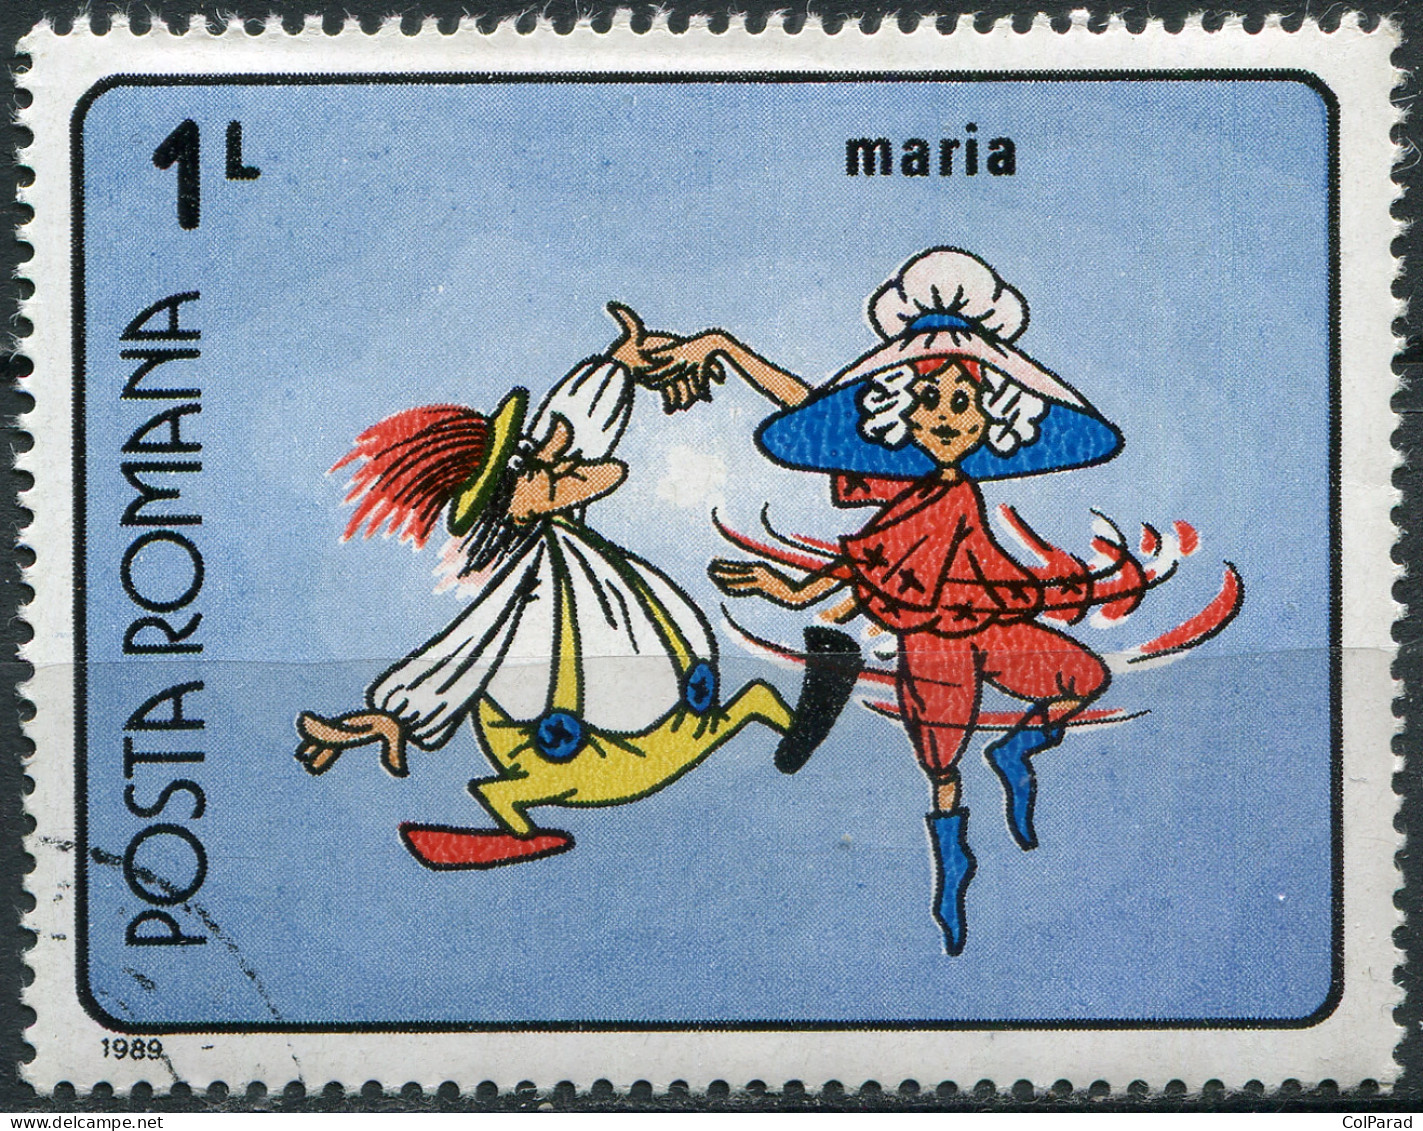 ROMANIA - 1989 - STAMP CTO - Cartoons "Maria's Adventure" - Unused Stamps